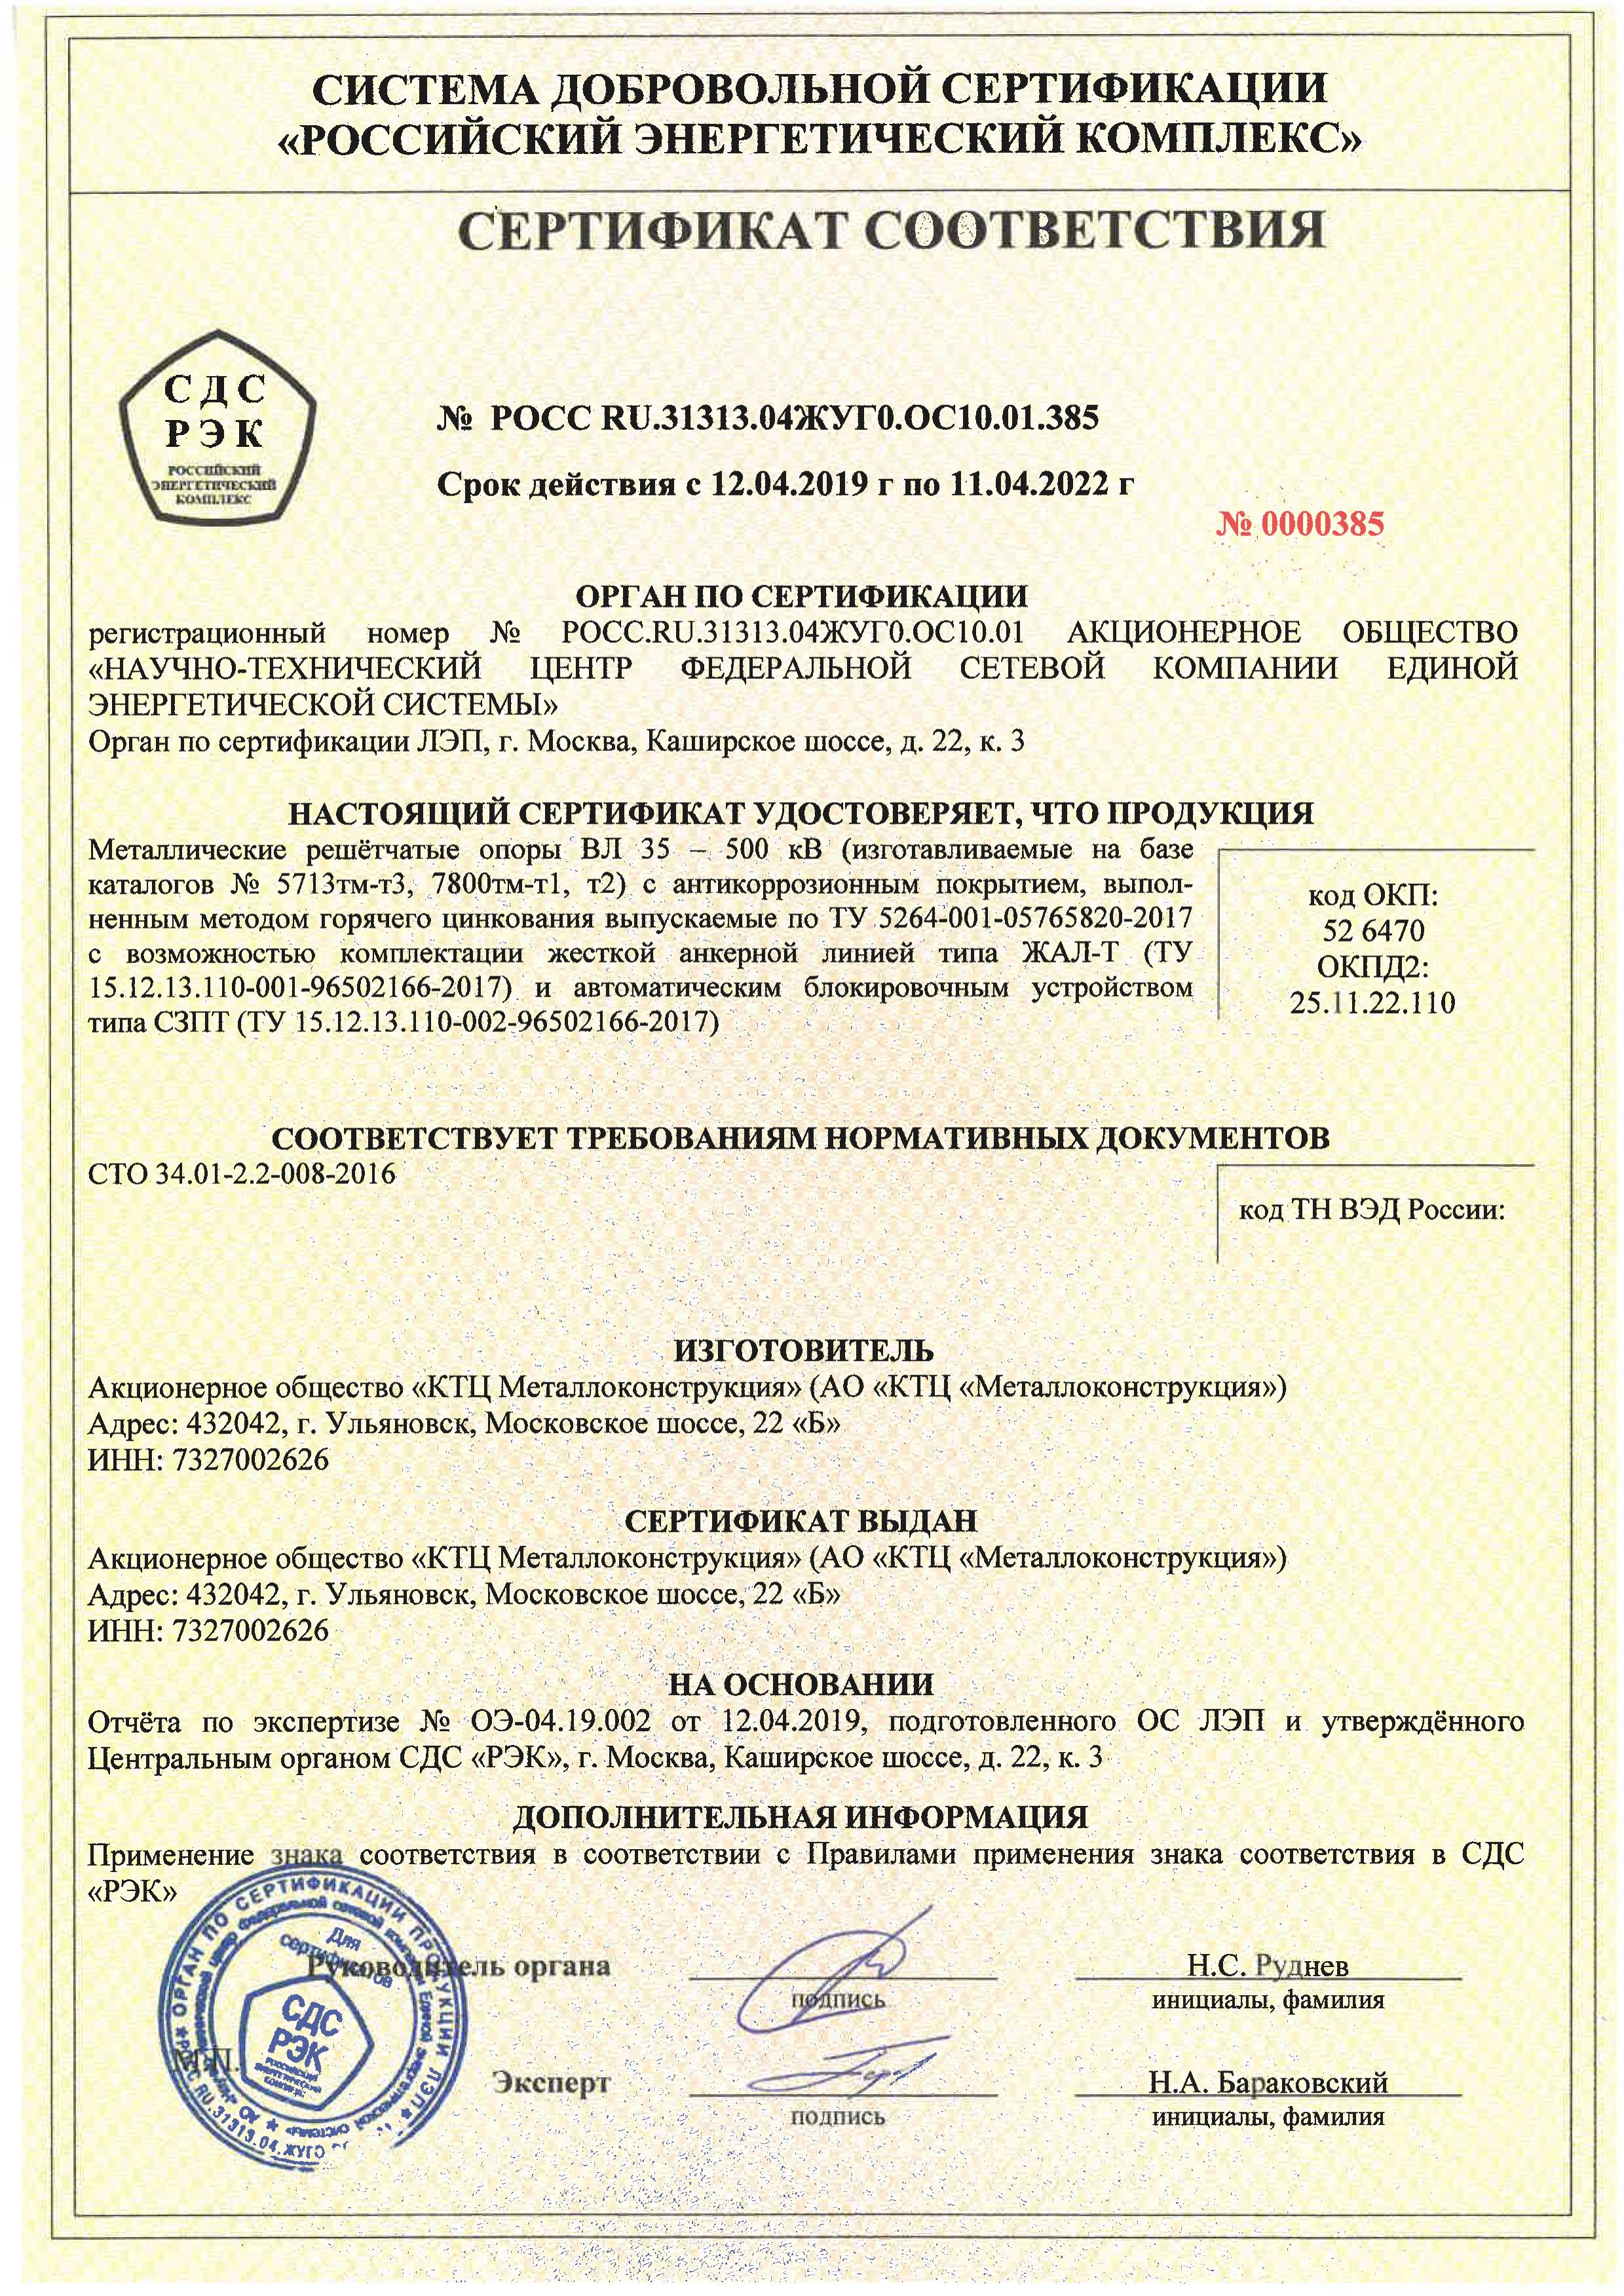 сертификат СДС РОСС RU.31313.04ЖУГО.ОС10.01.385, КТЦ Металлоконструкция